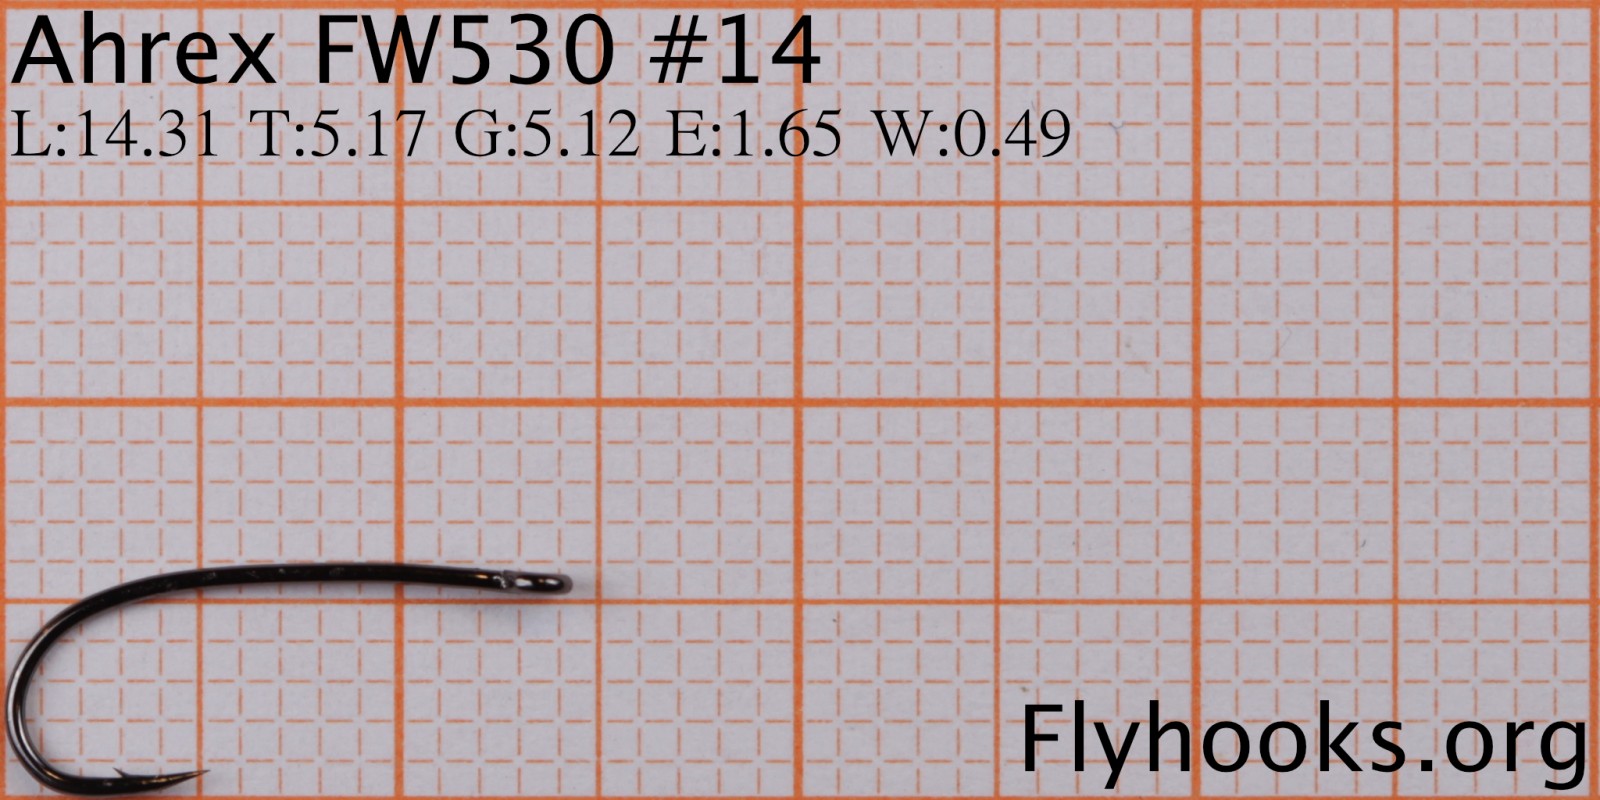 FW 530 - Sedge/Caddis